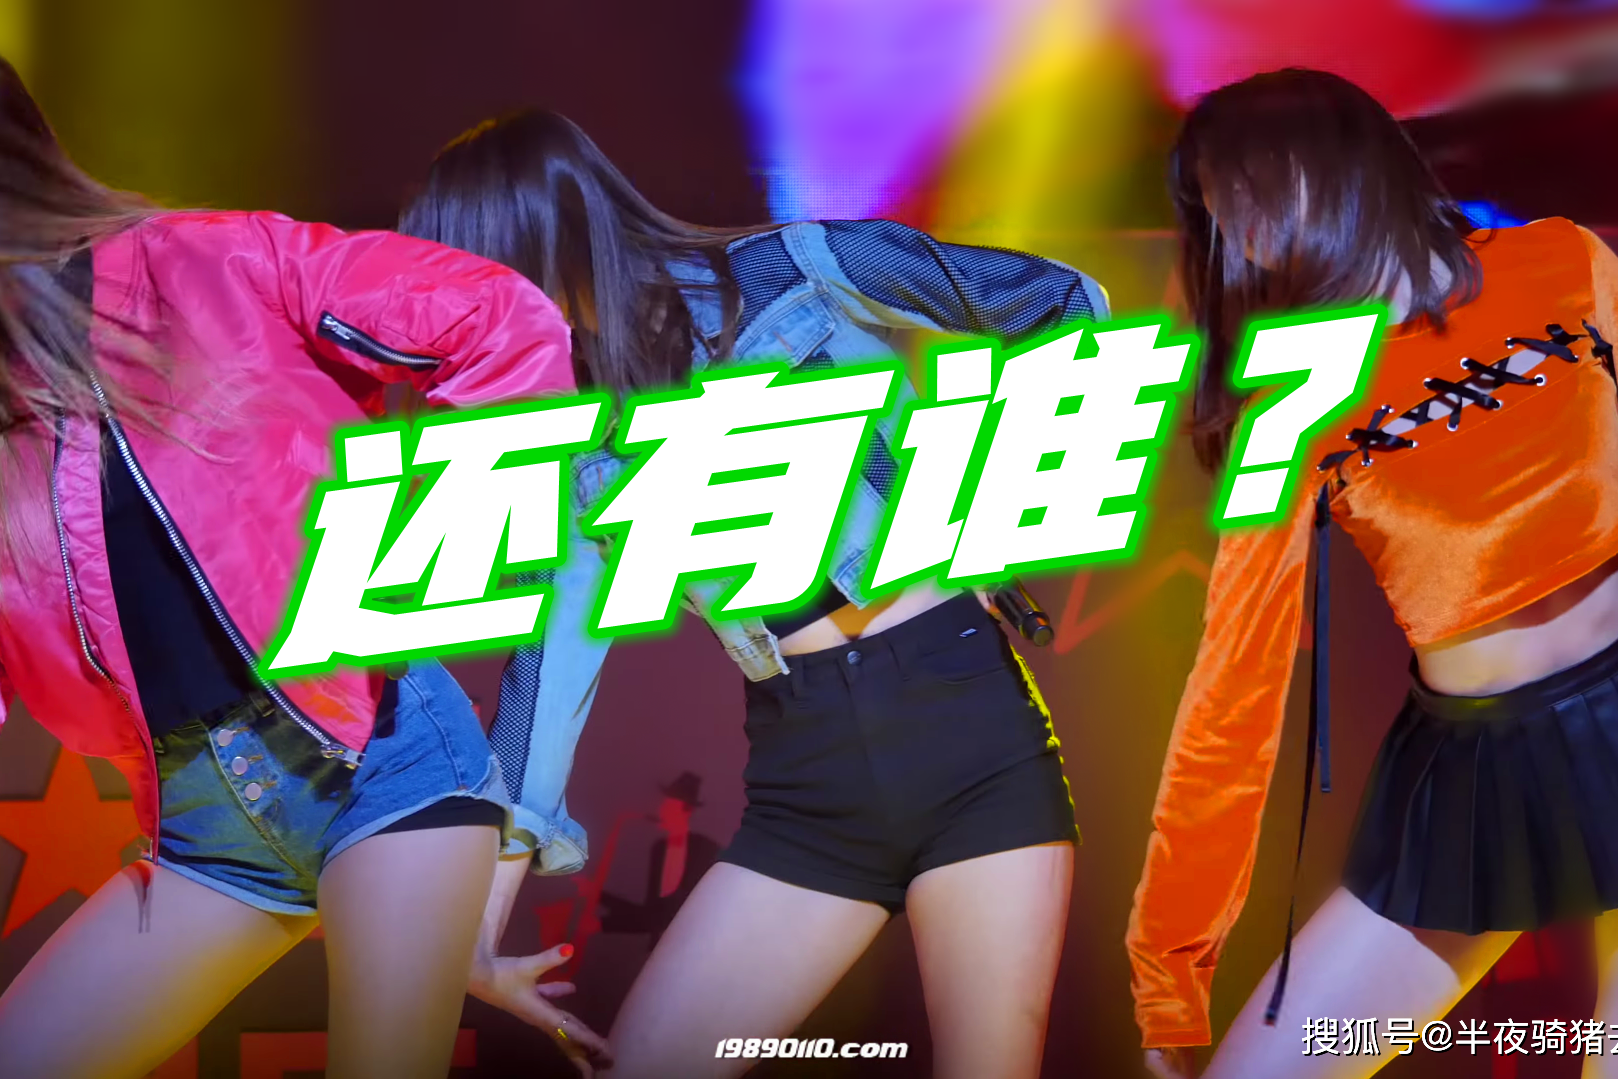 韩国性感女团的超短裤大秀舞姿,幅度这么大不怕走光吗